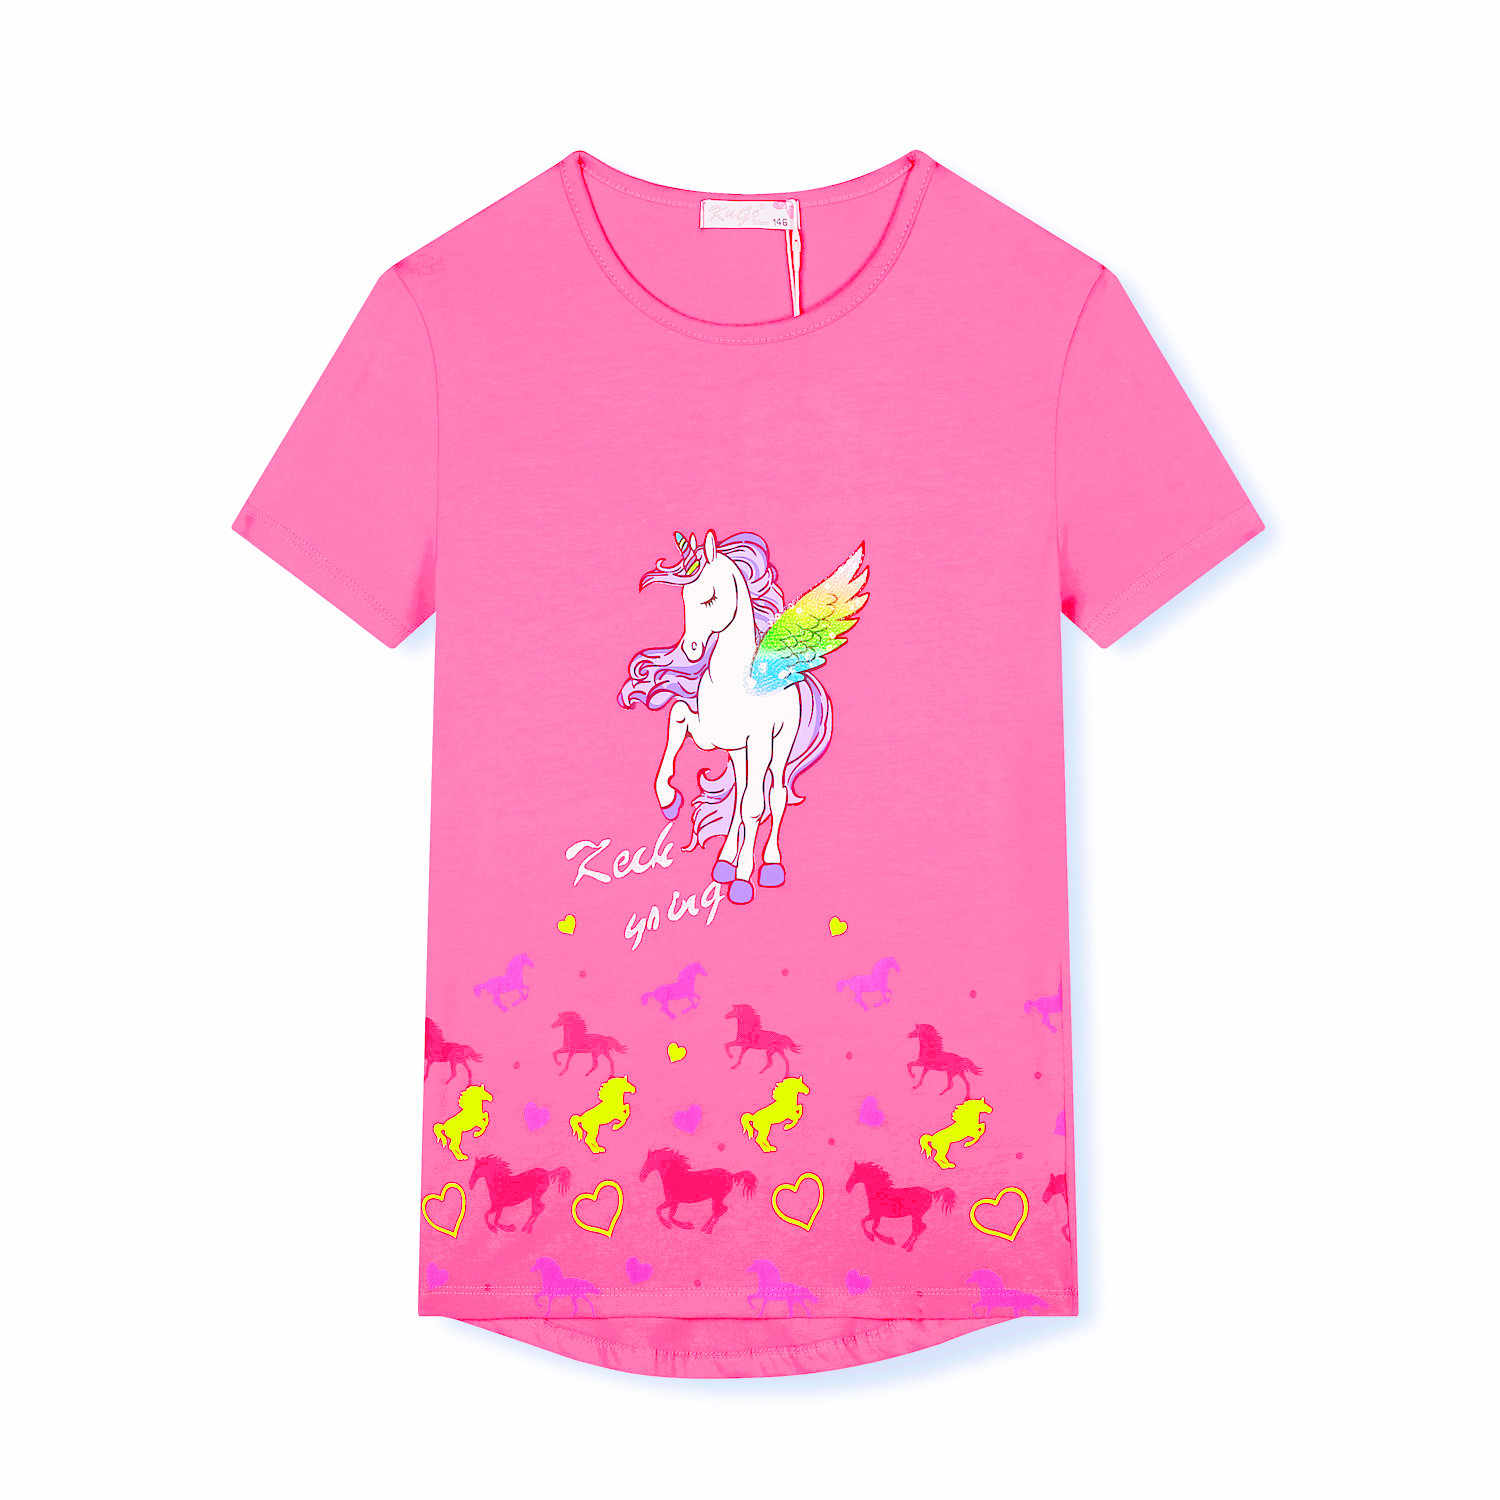 Dívčí tričko - KUGO HC0683, růžová sytě Barva: Růžová, Velikost: 152